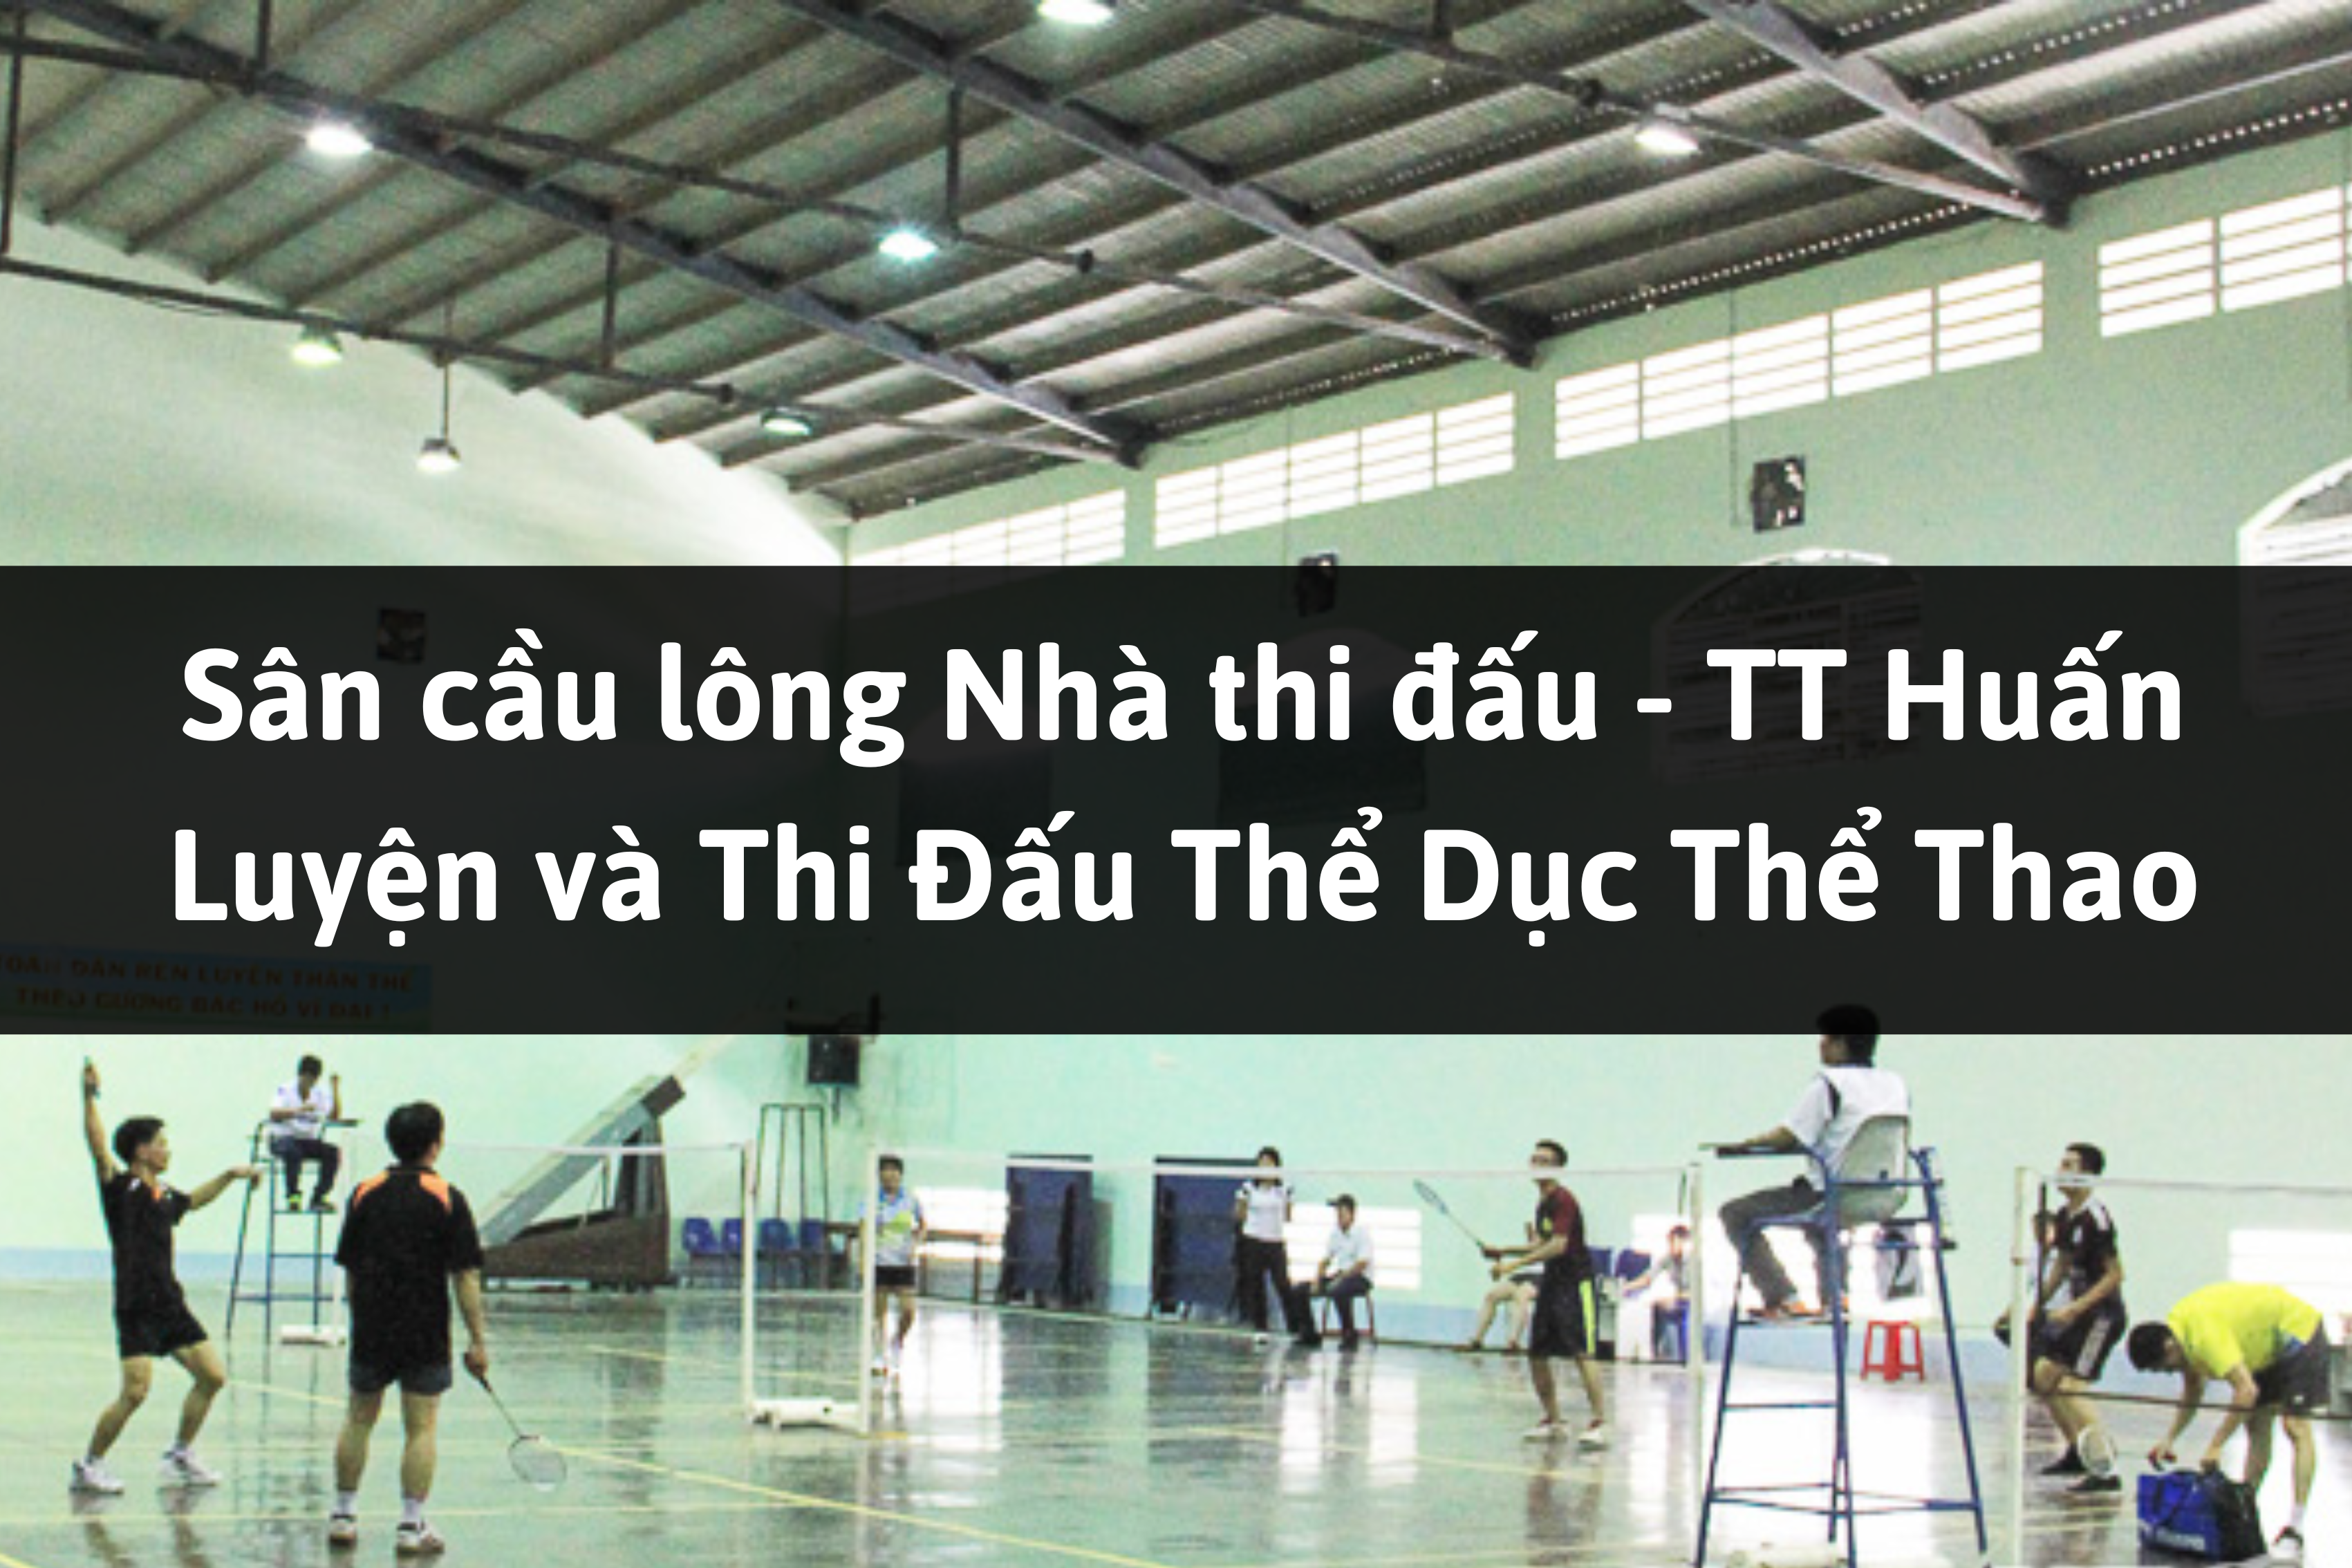 Sân cầu lông Nhà thi đấu - TT Huấn Luyện và Thi Đấu Thể Dục Thể Thao, Phan Rang - Tháp Chàm, Ninh Thuận